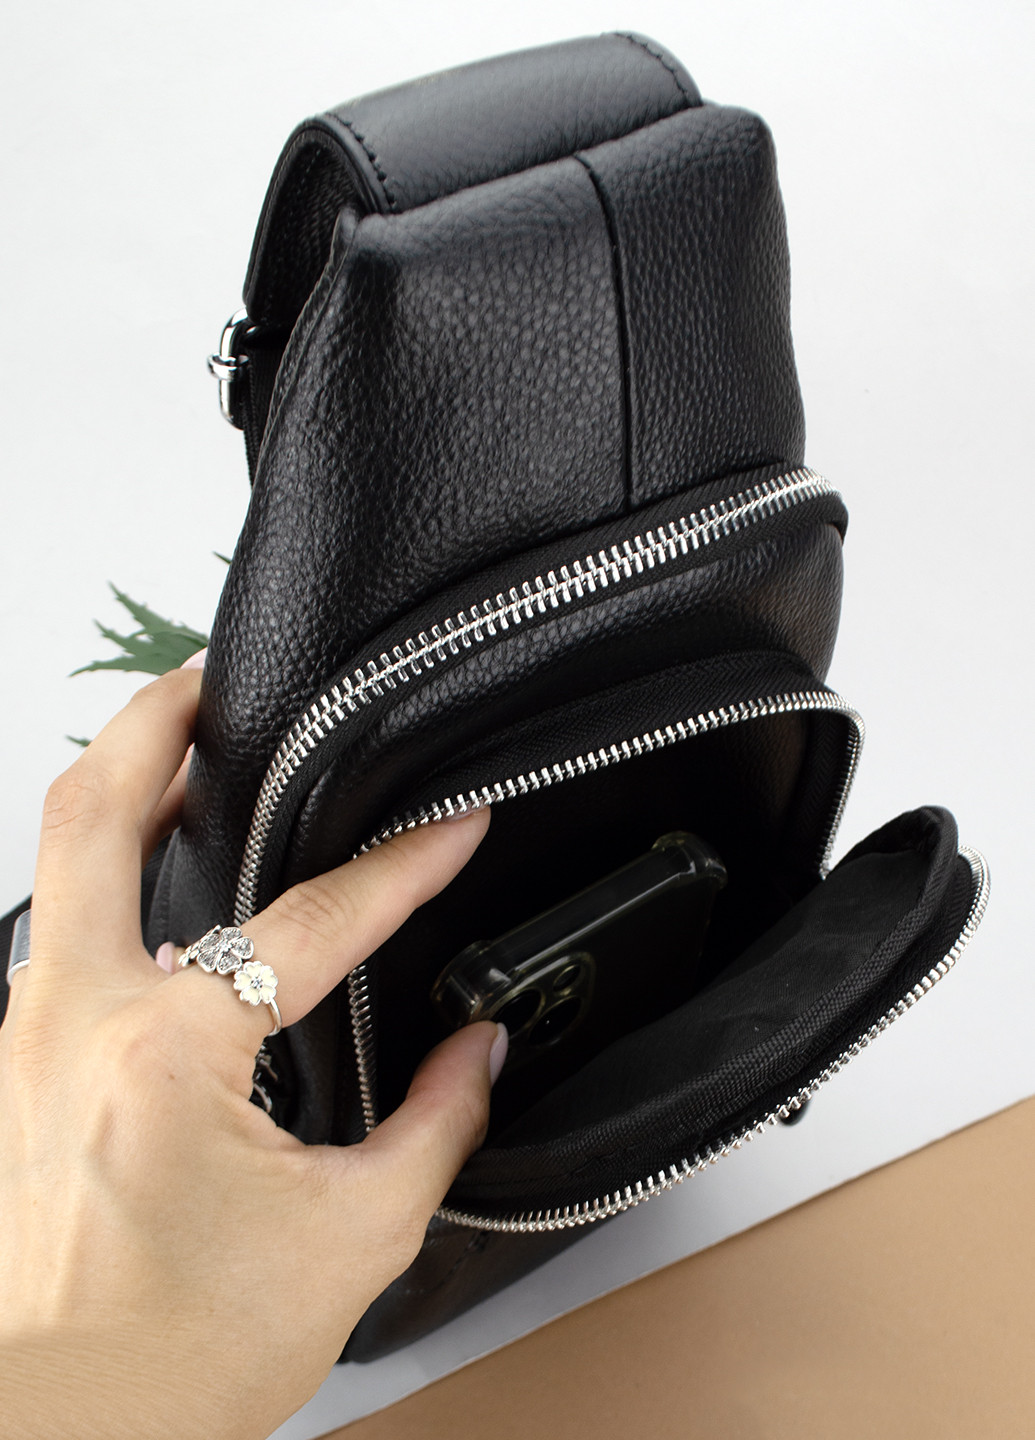 Мужской кожаный рюкзак Keizer 6603 черный на плечо (ремешок перестегивается) HandyCover (263428198)